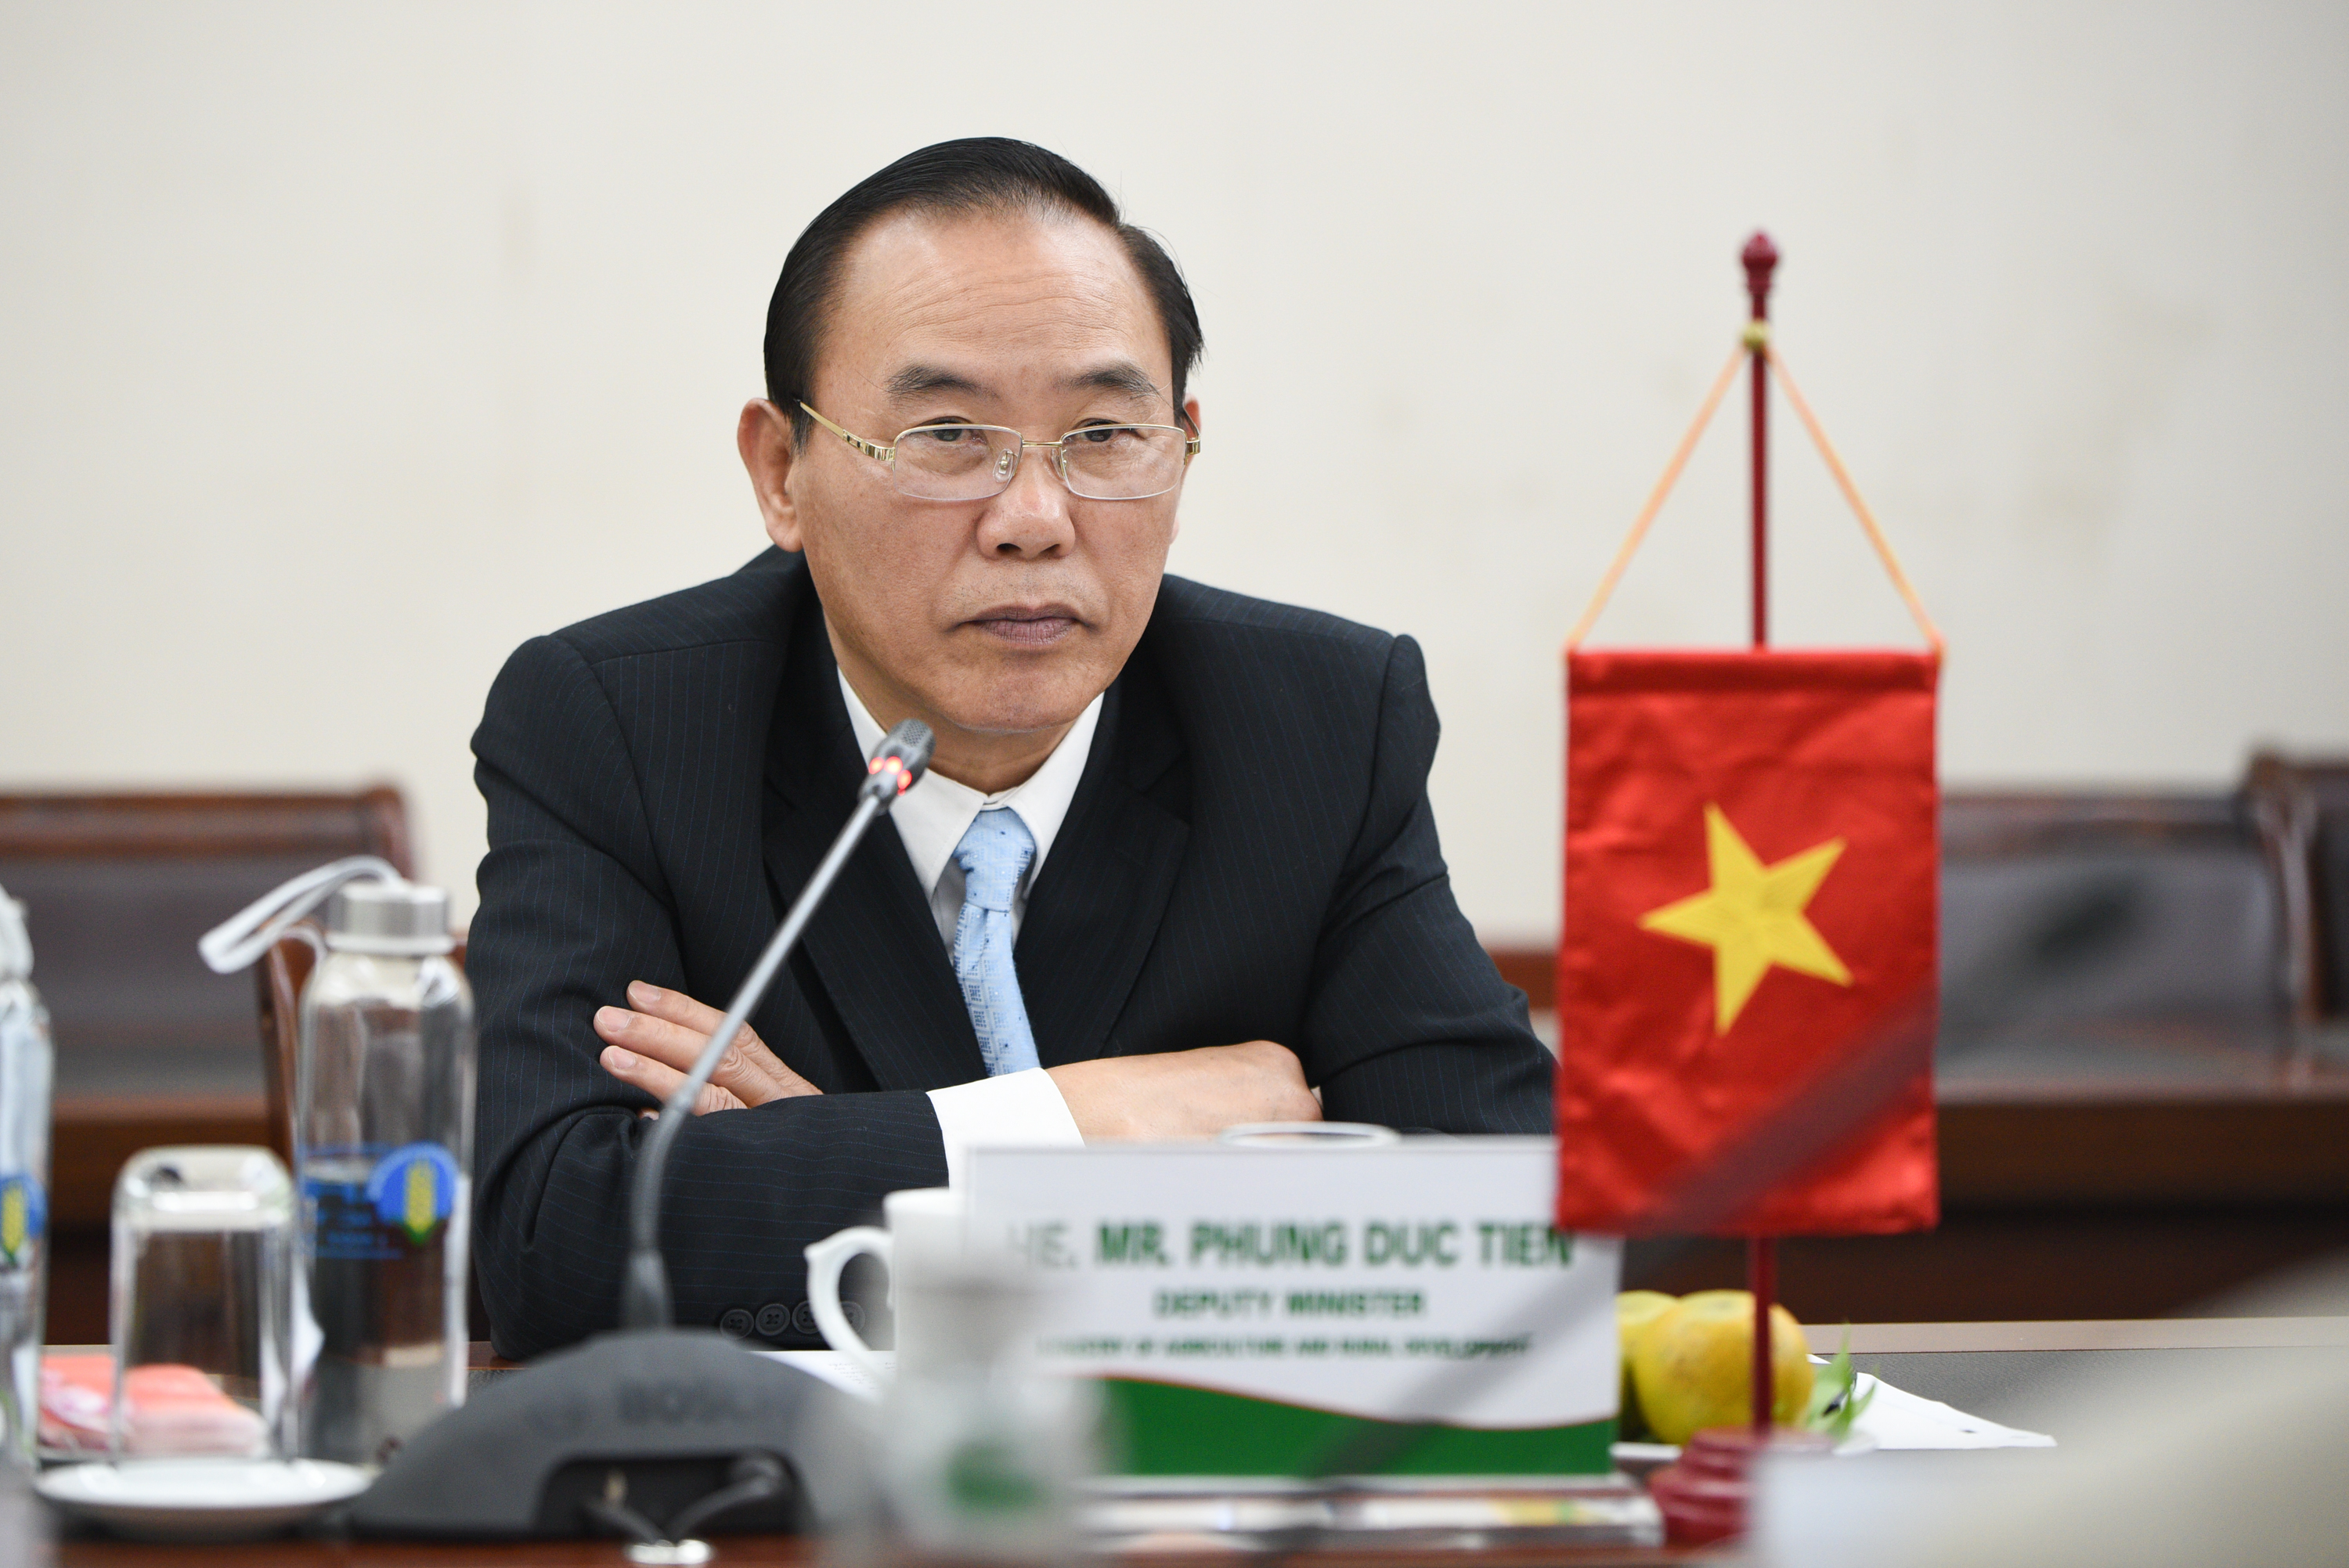 Thứ trưởng Phùng Đức Tiến đánh giá cao việc FOUR PAWS tham gia vào khung đối tác Một sức khỏe Việt Nam. Ảnh: Tùng Đinh.